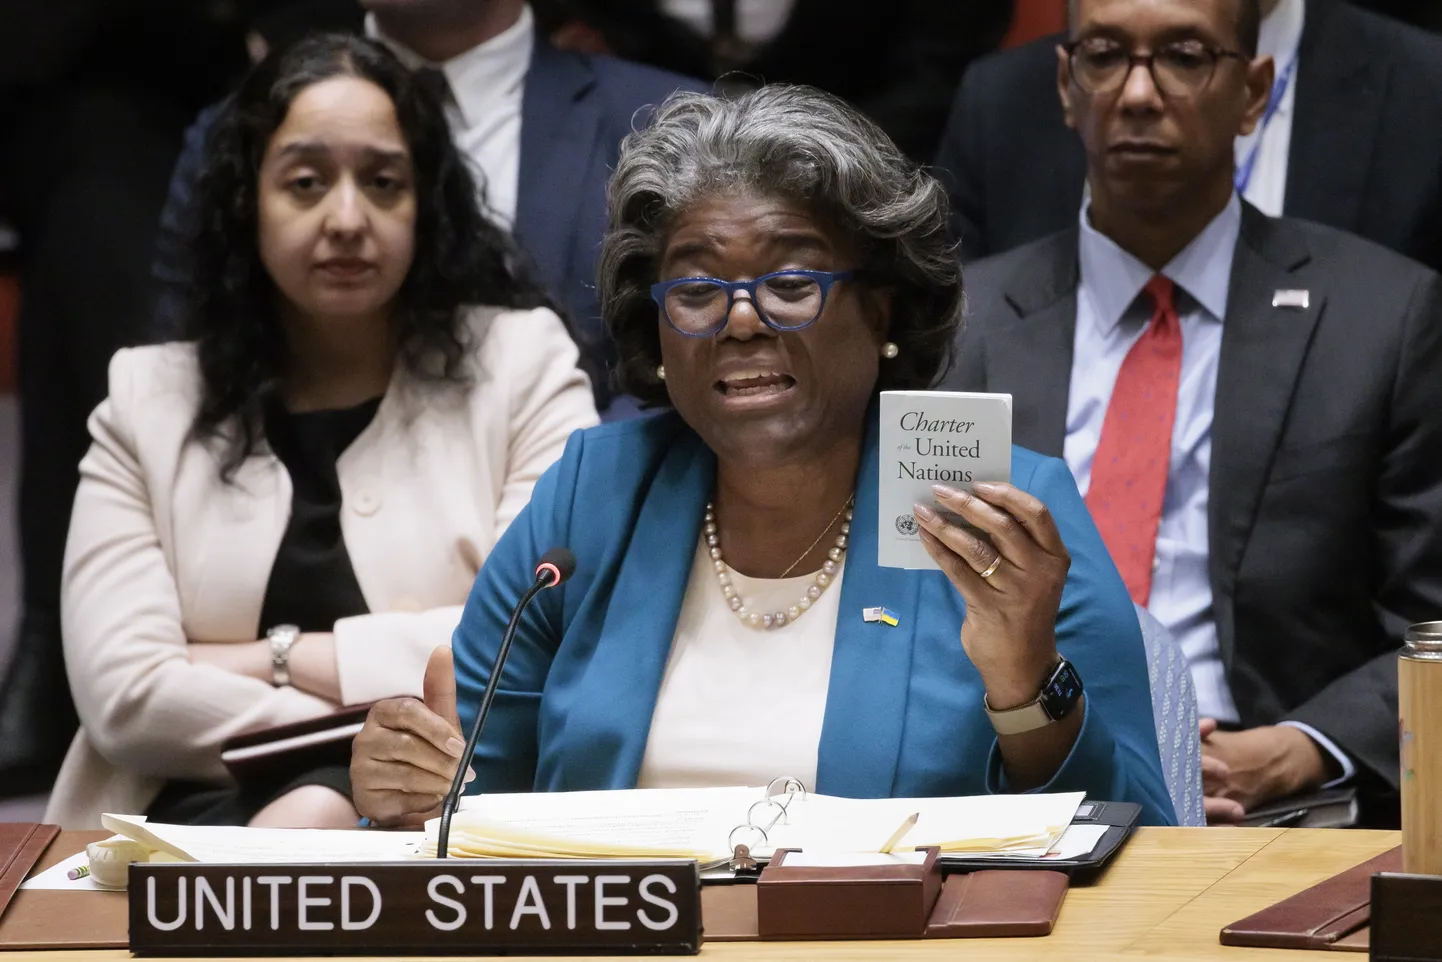 Ameerika Ühendriikide suursaadik ÜRO juures Linda Thomas-Greenfield hoiab ÜRO Julgeolekunõukogu koosolekul kõnet pidades käes ÜRO põhikirja koopiat.